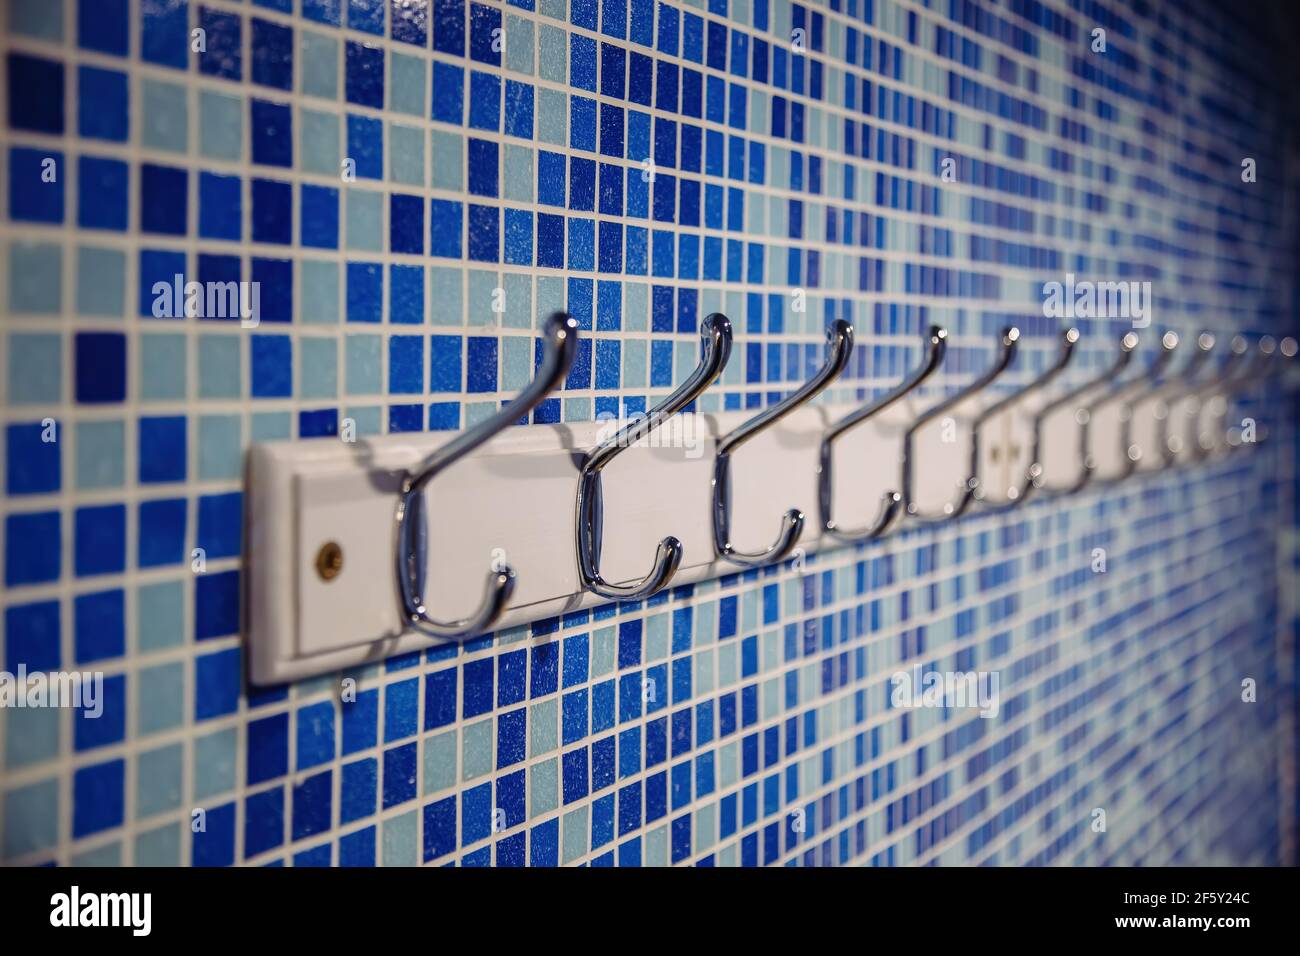 Metal hanger hooks on blue tiled wall. Stock Photo